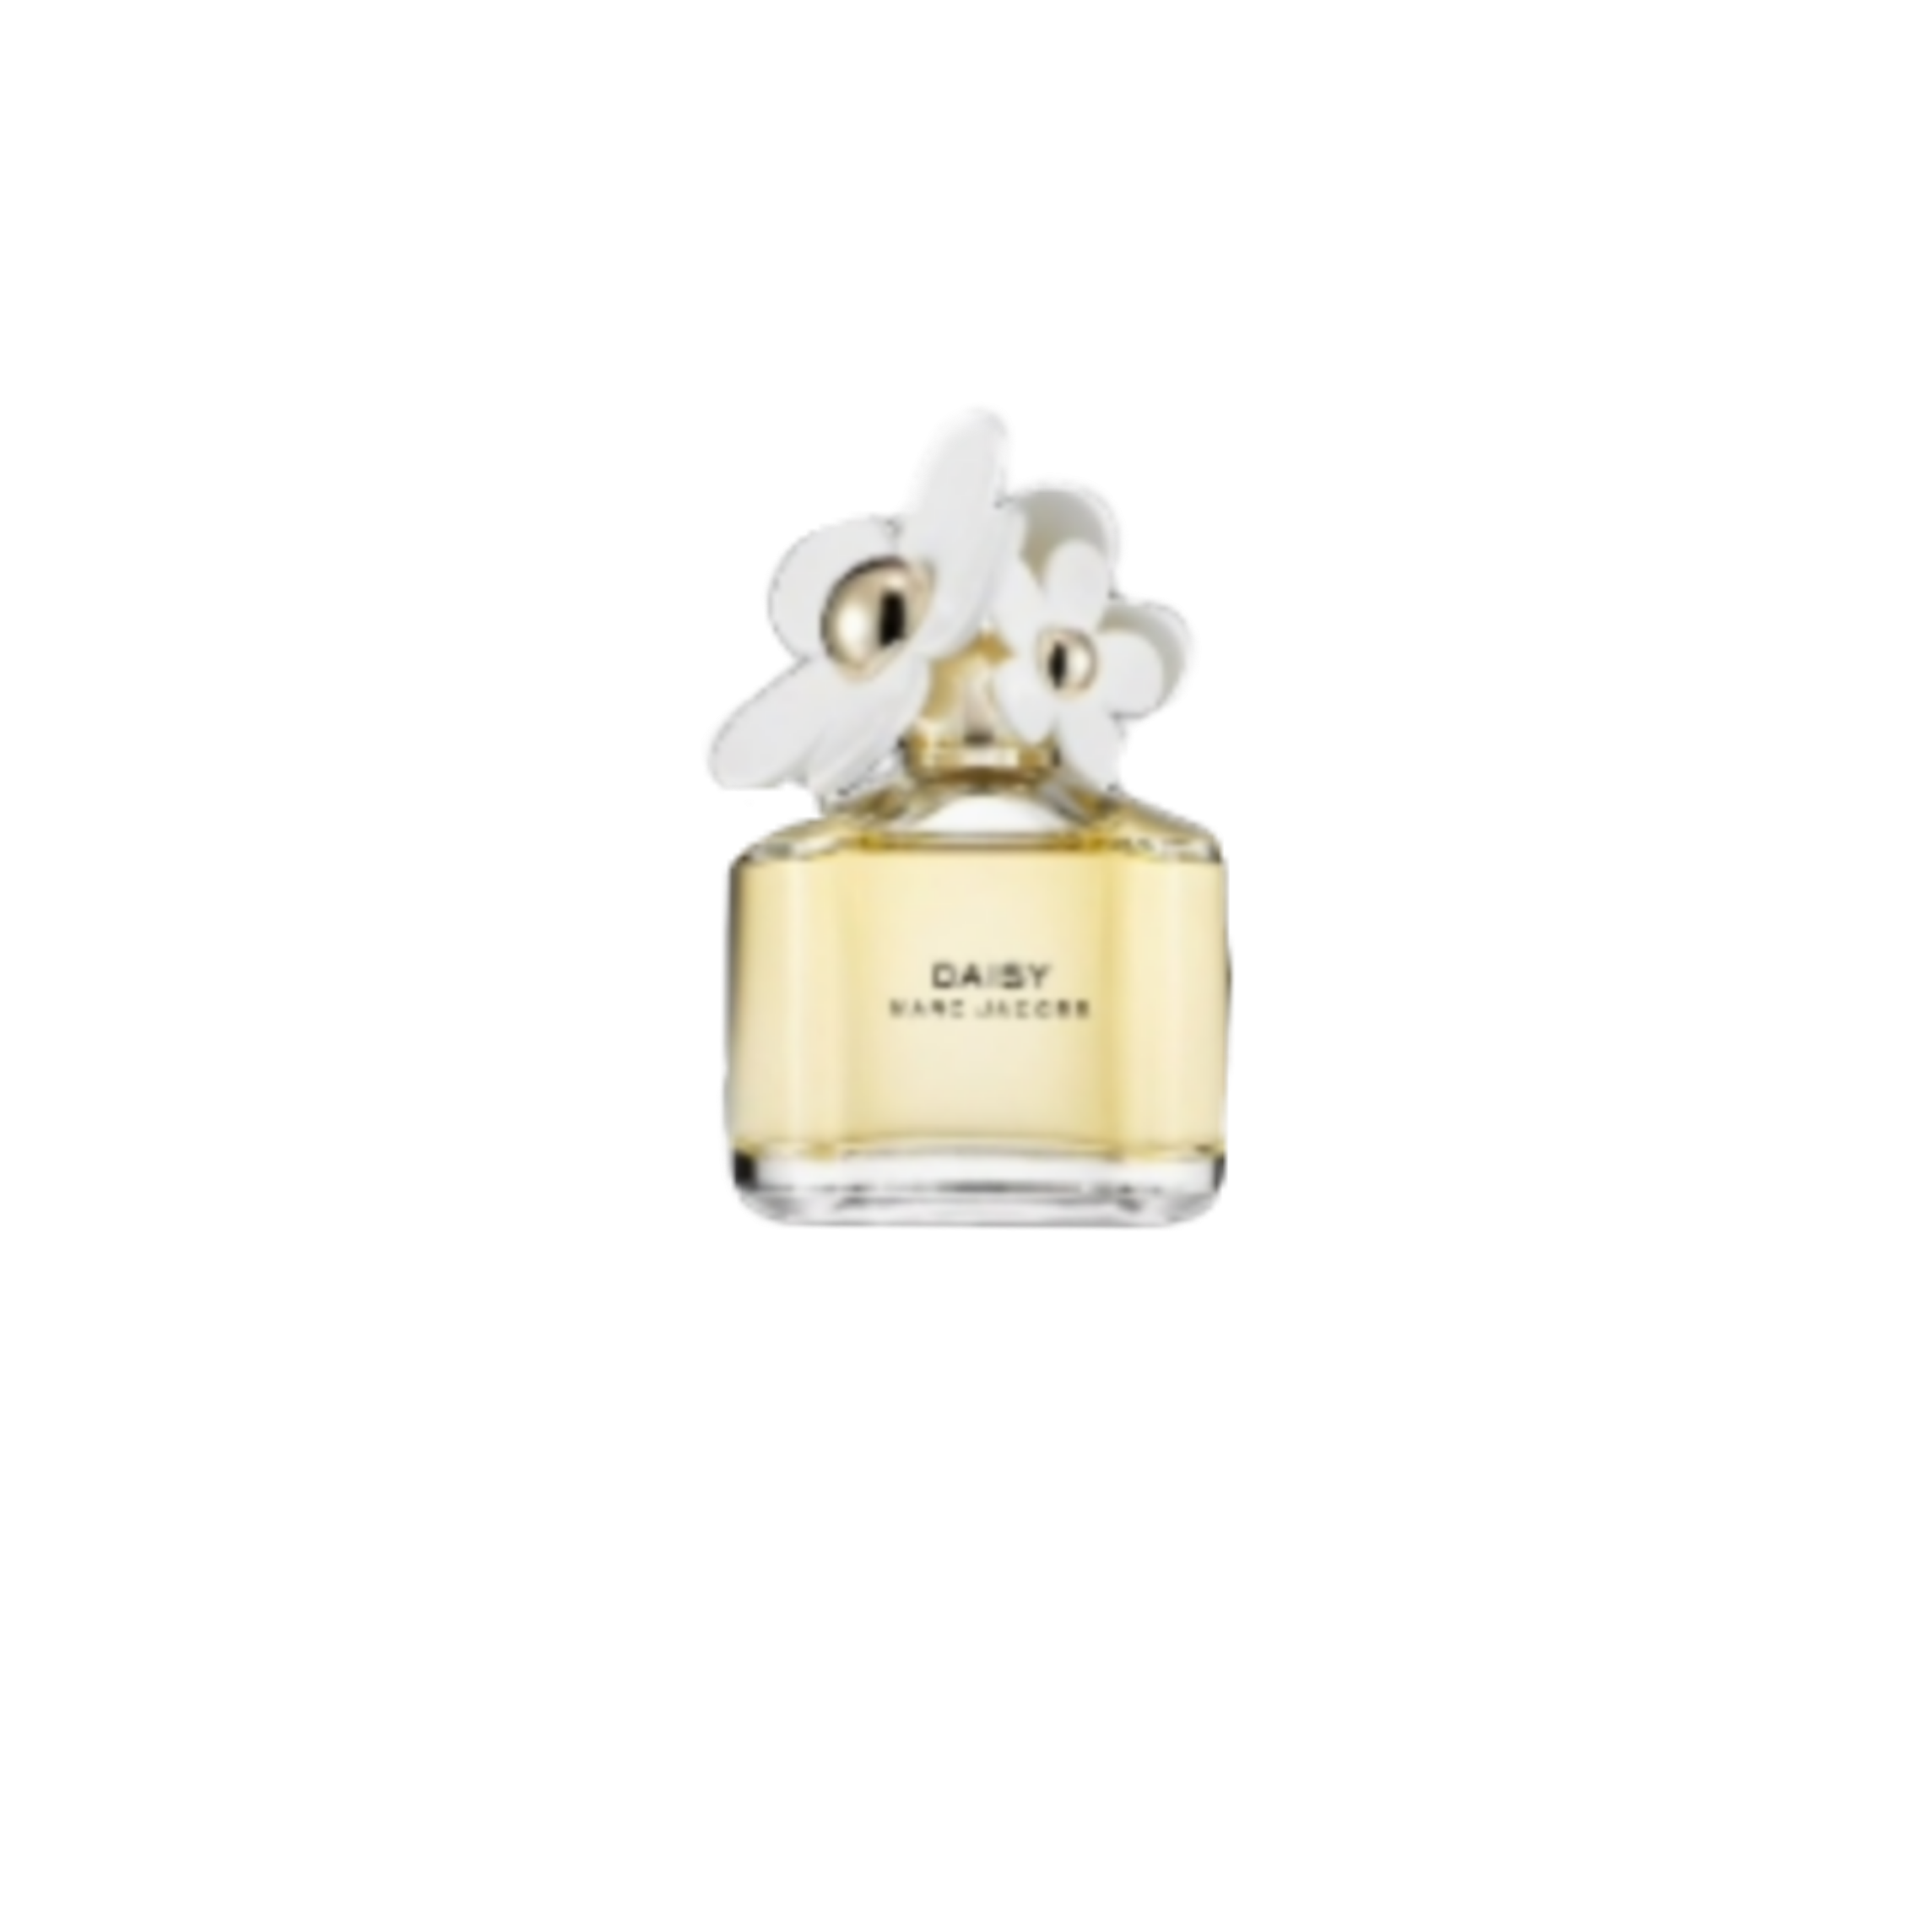 niche perfume nichememes freetoedit sticker by @awheditz-